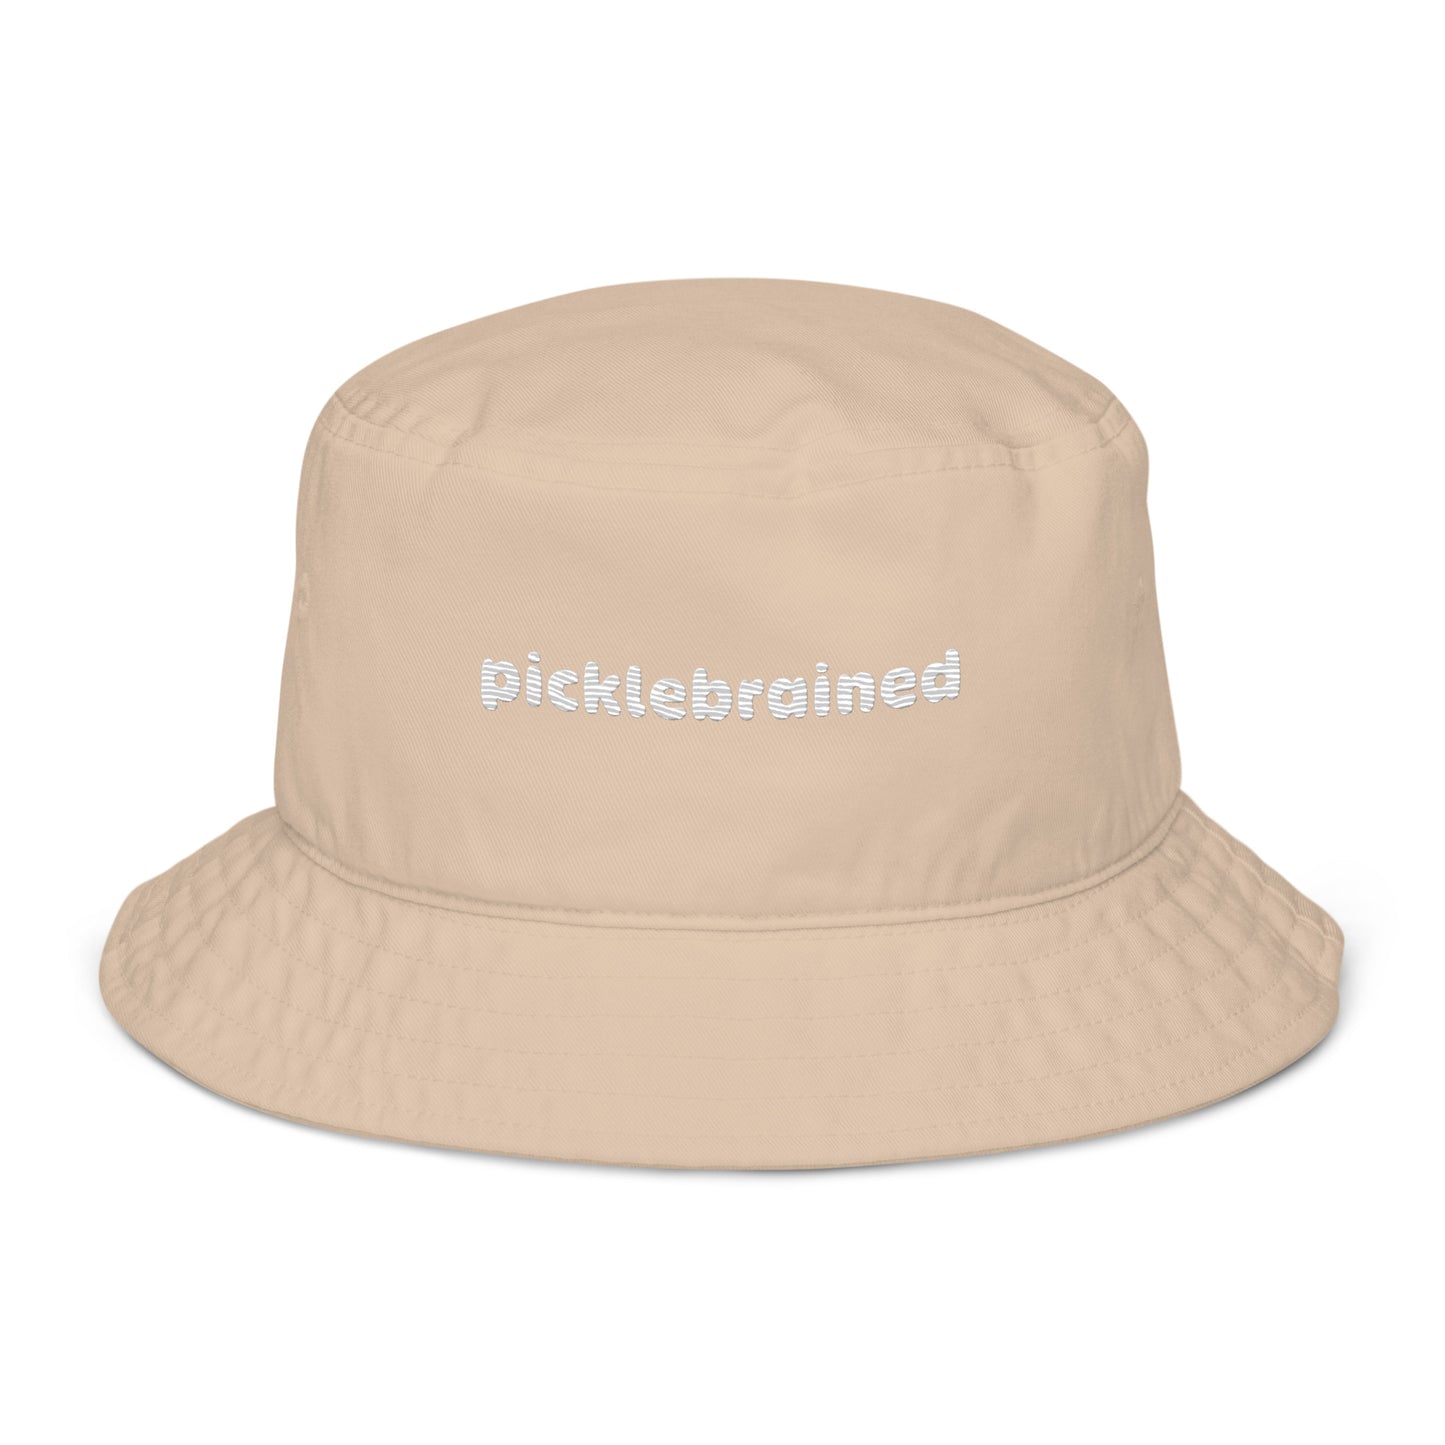 Picklebrained tan bucket hat